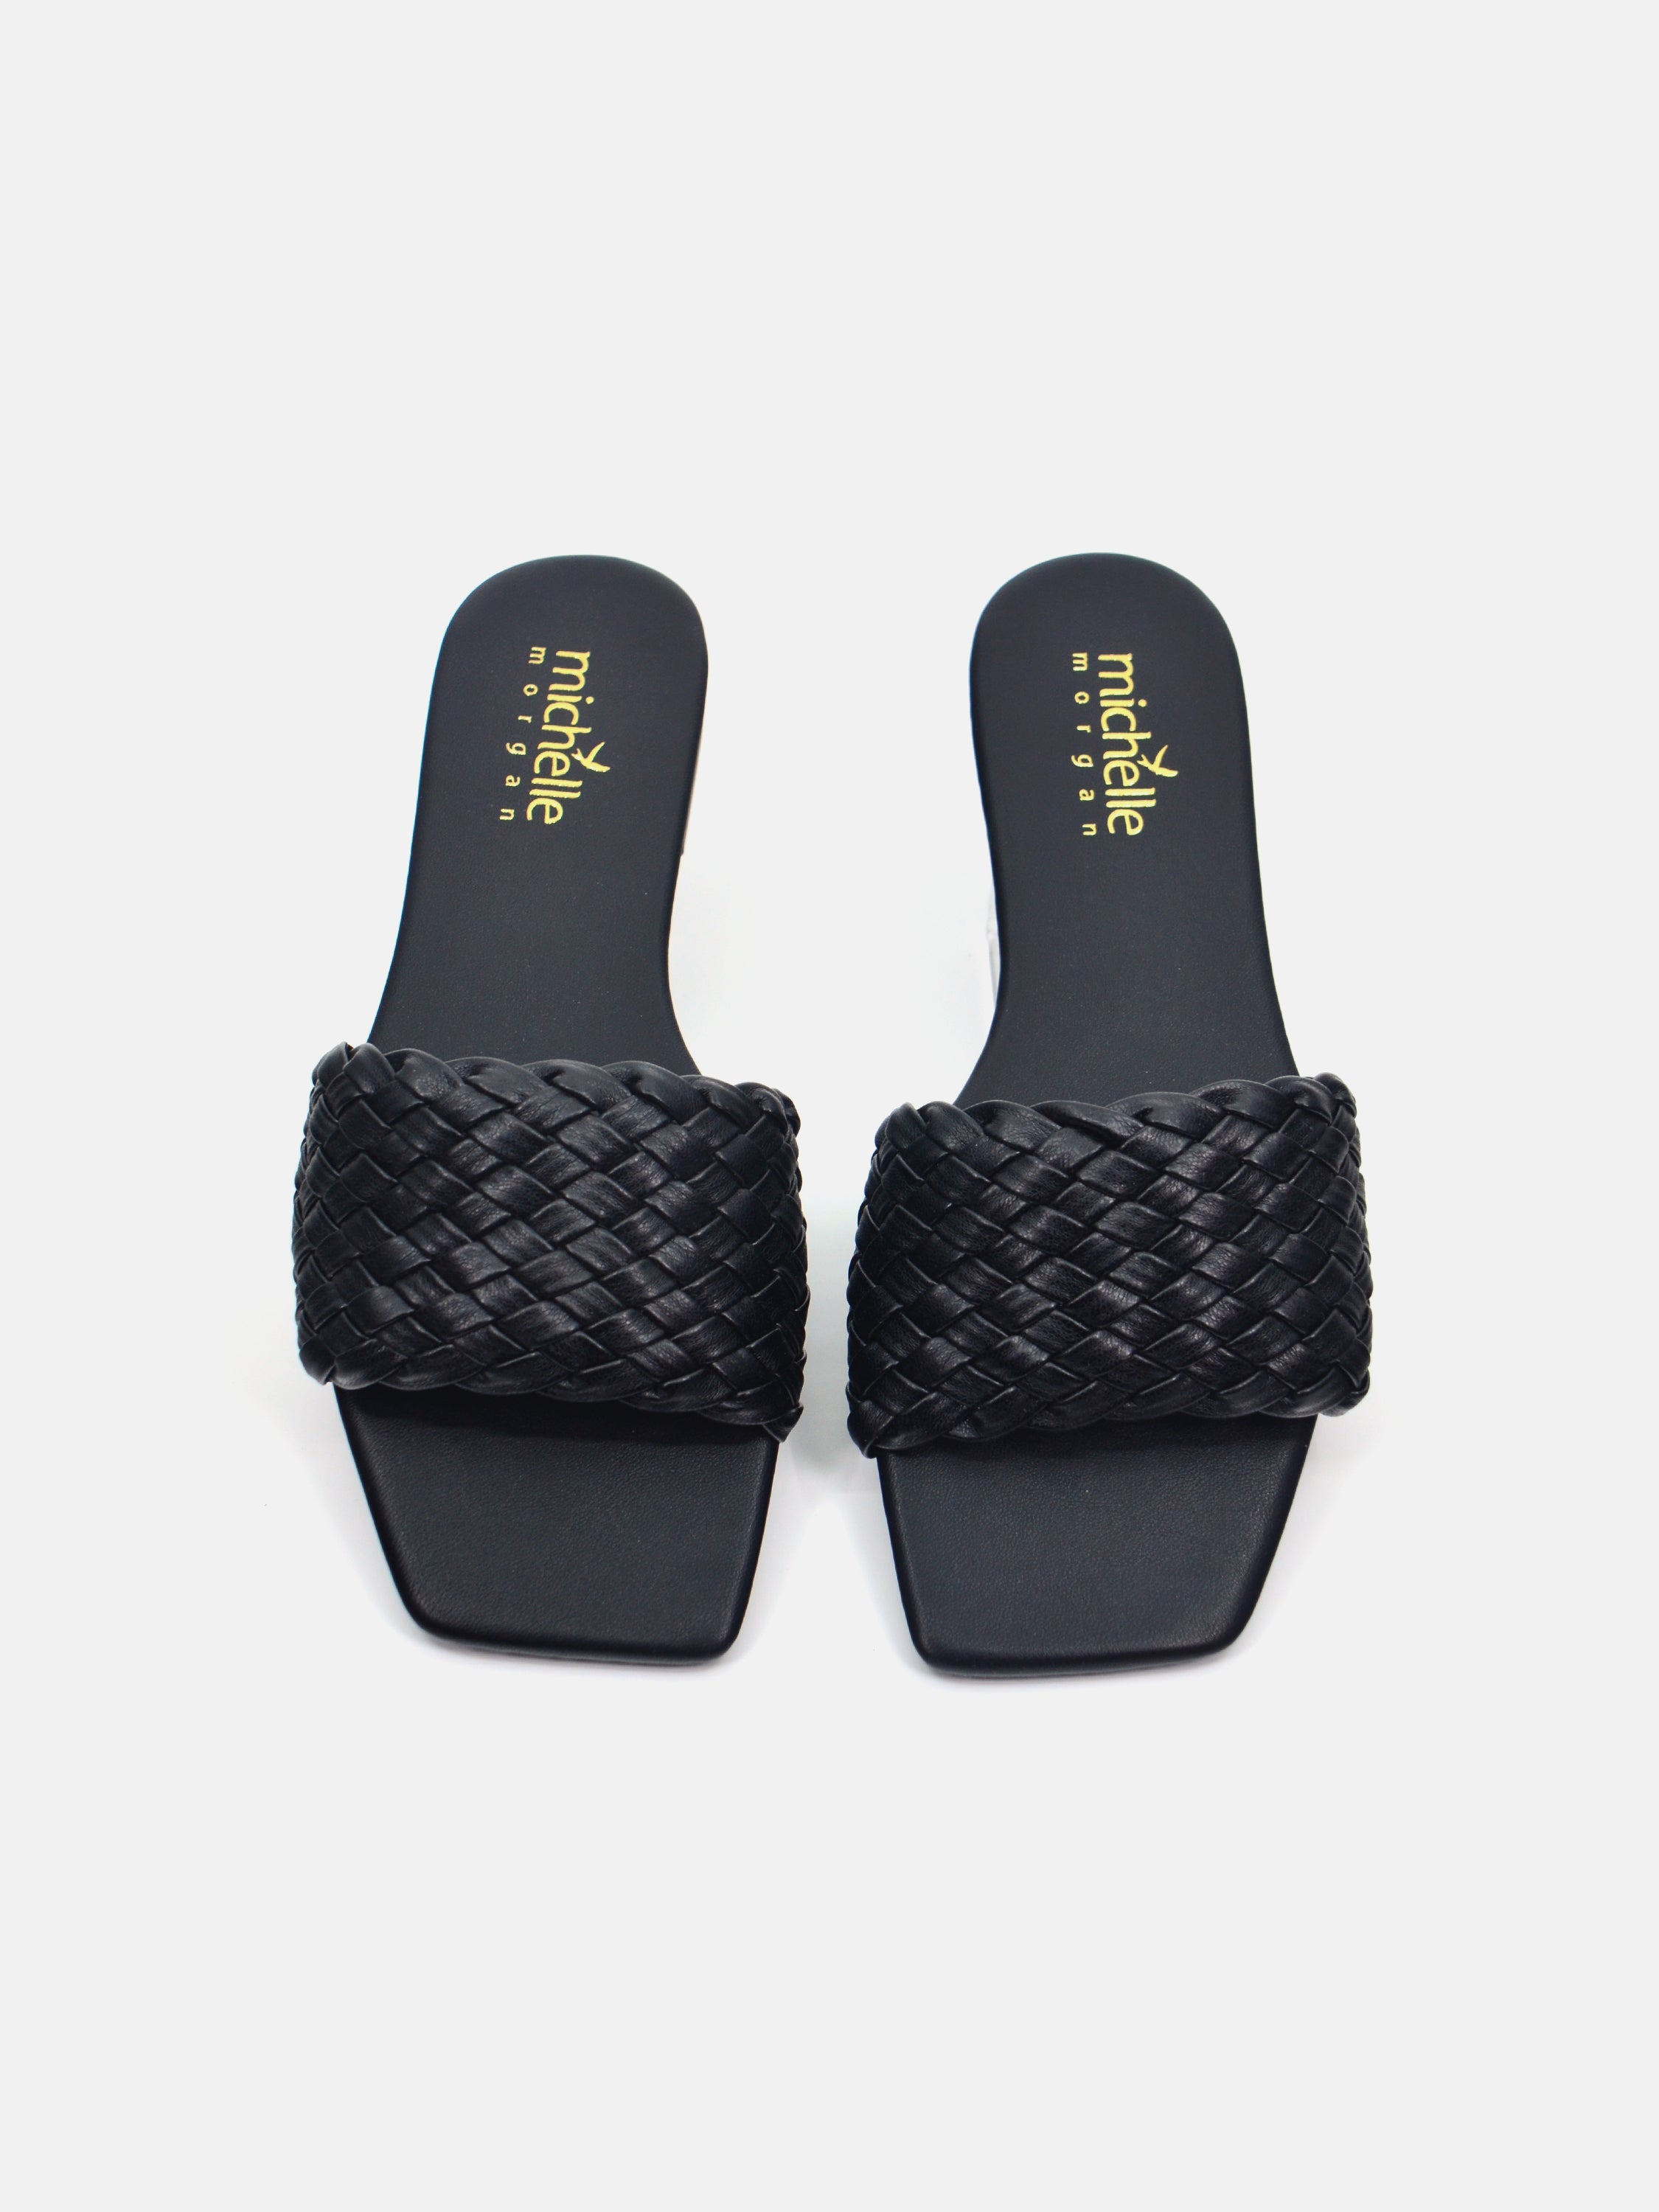 Michelle Morgan 014RJ803 Women's Flat Sandals #color_Black